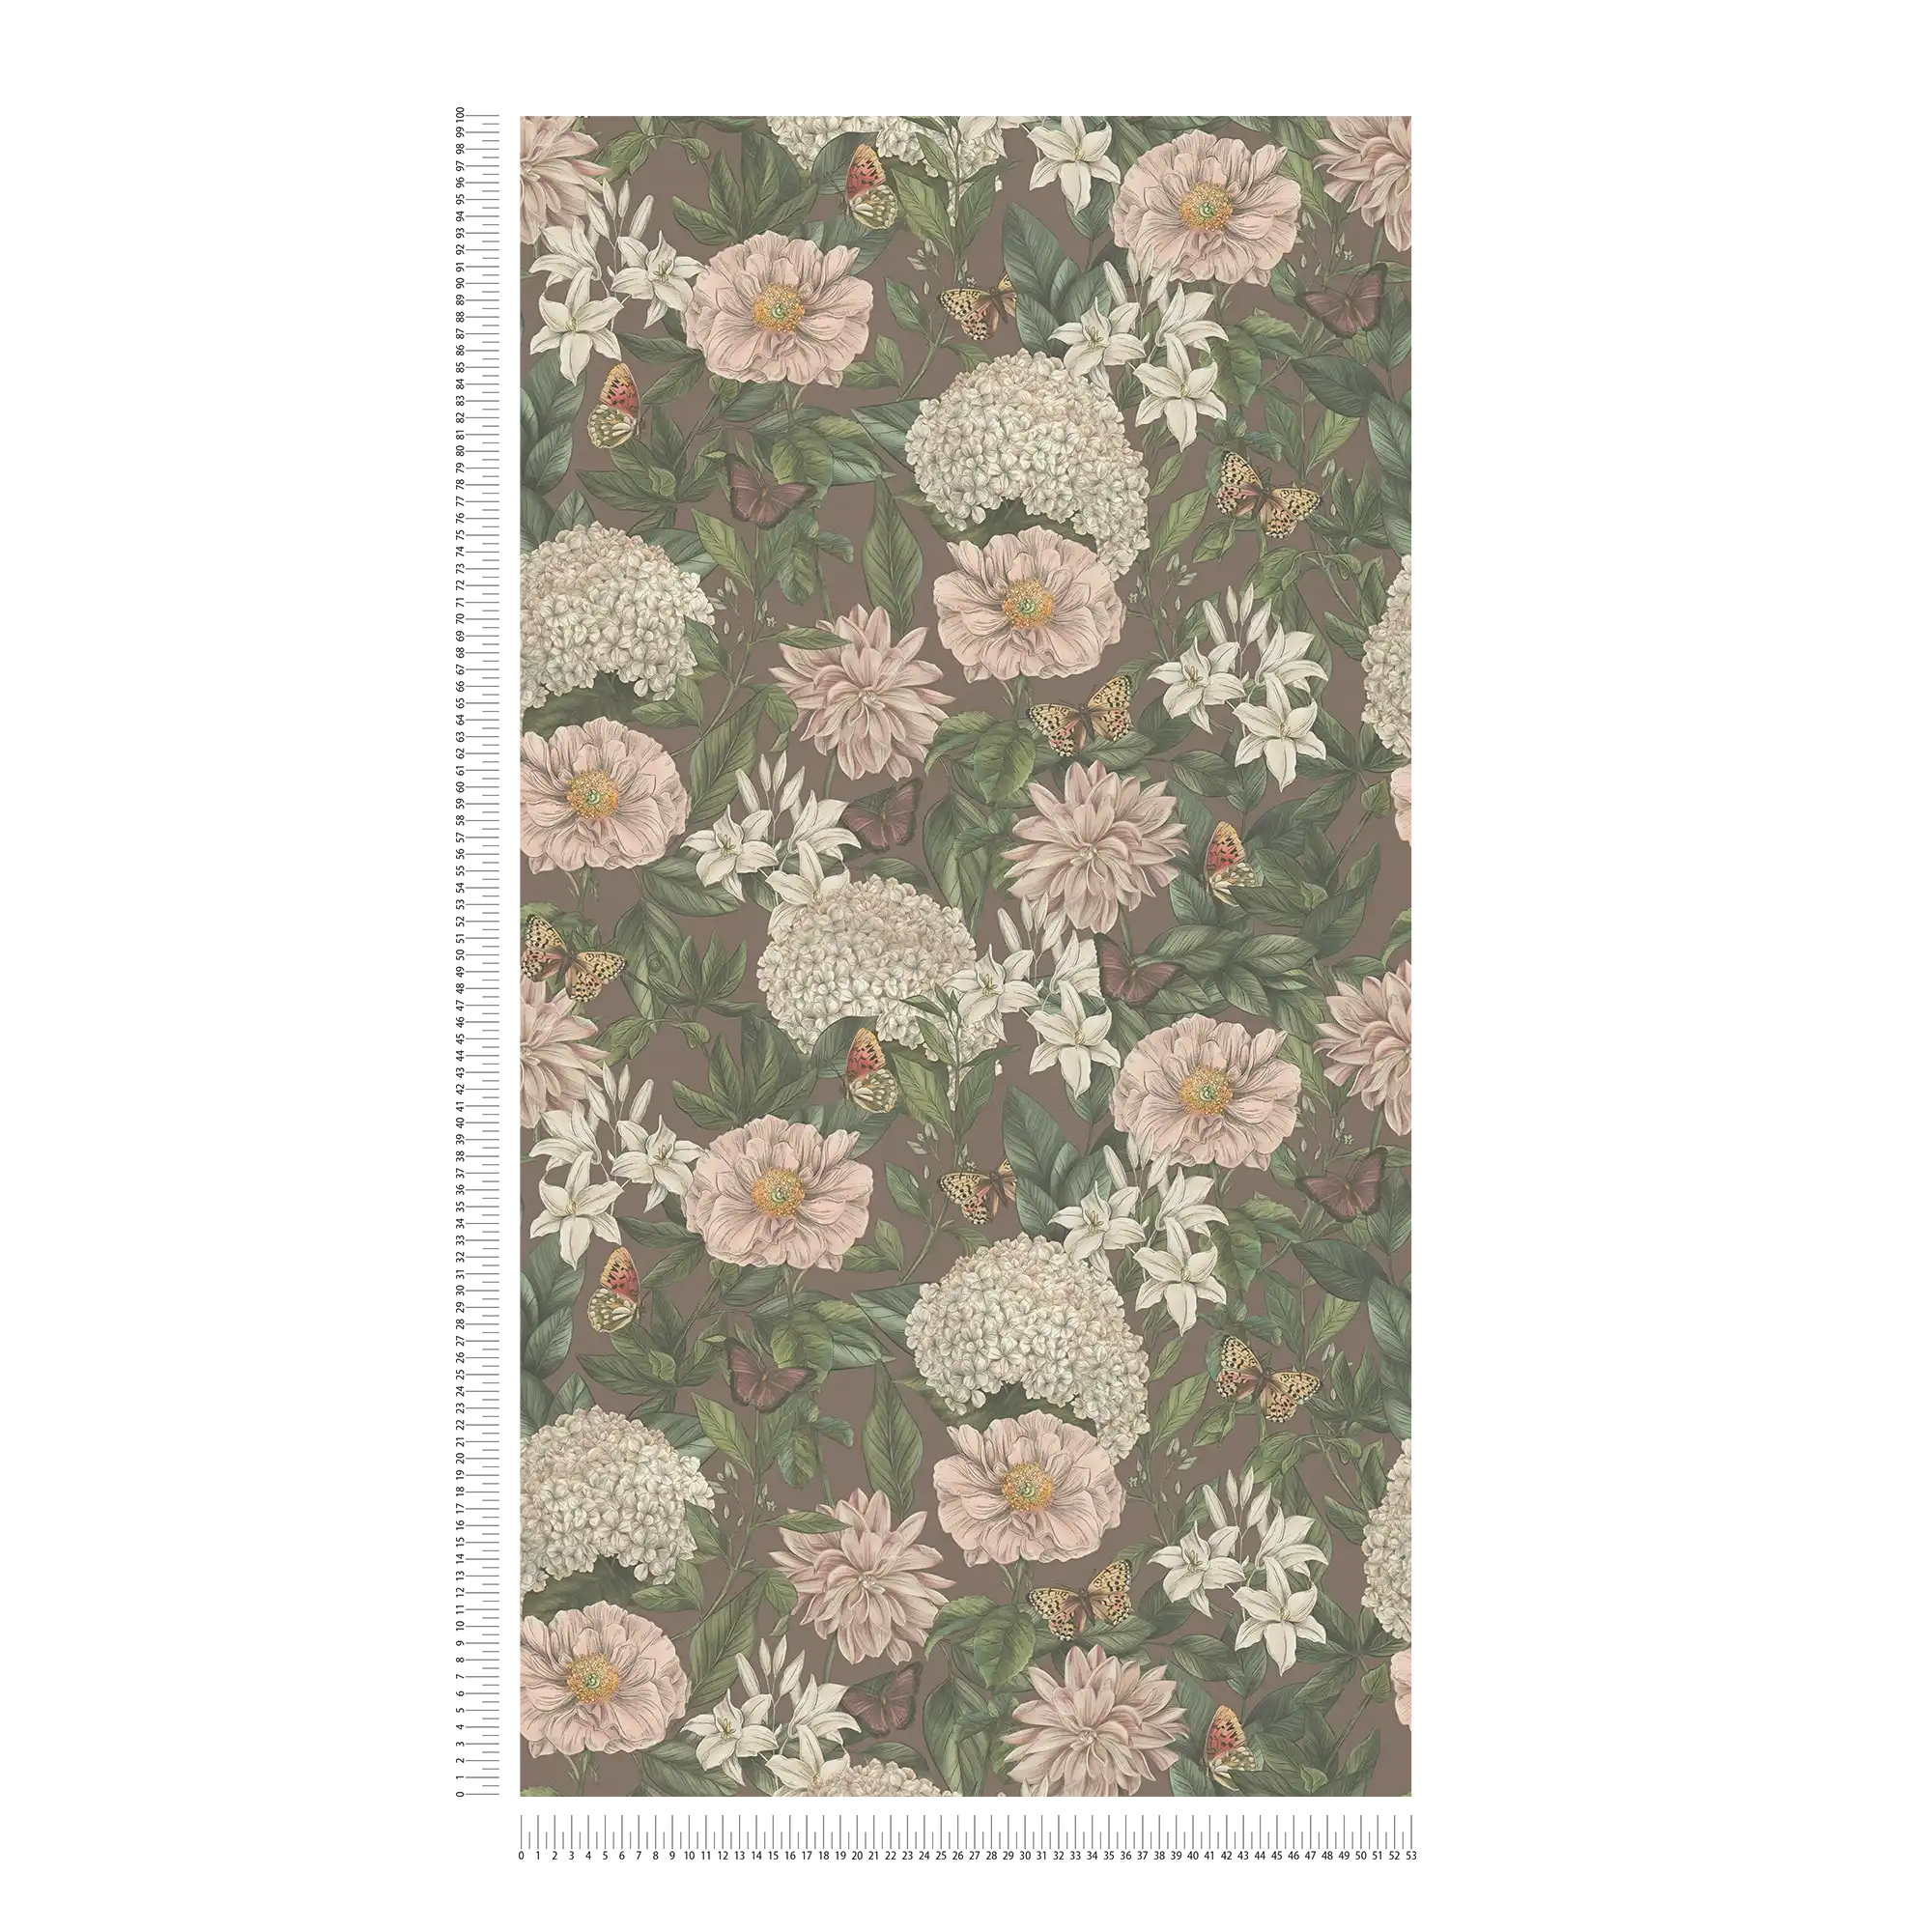             Modern behang met bloemen & vlinders structuur mat - bordeaux, roze, donkergroen
        